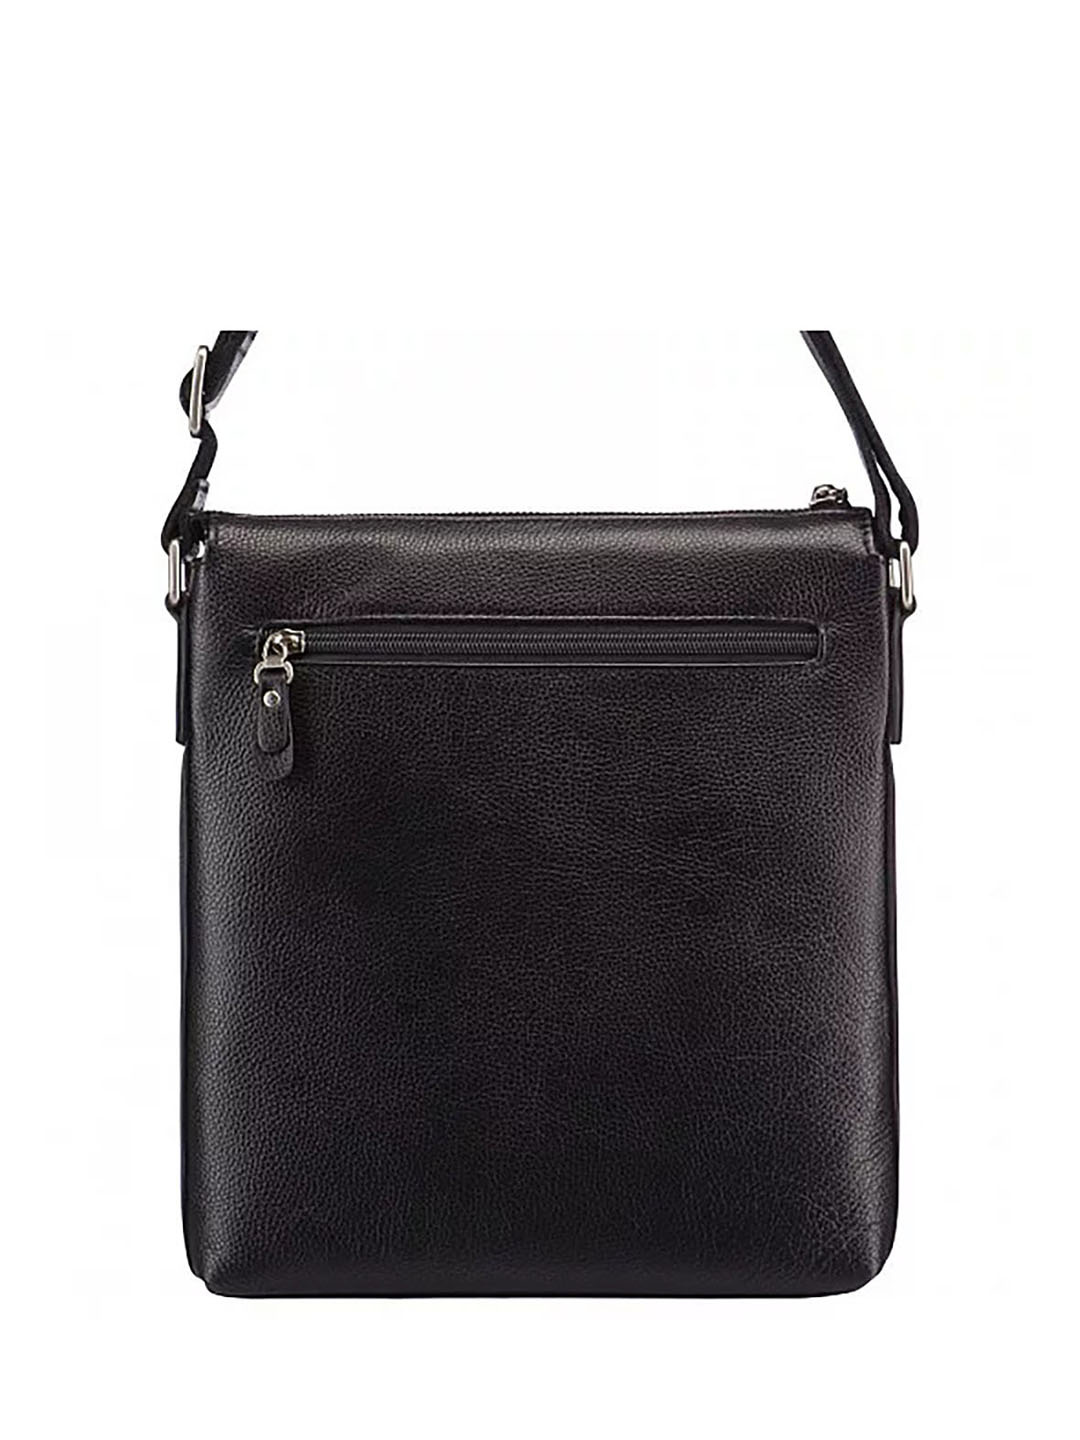 Фото Небольшая мужская сумка черного цвета из натуральной кожи Сумки через плечо